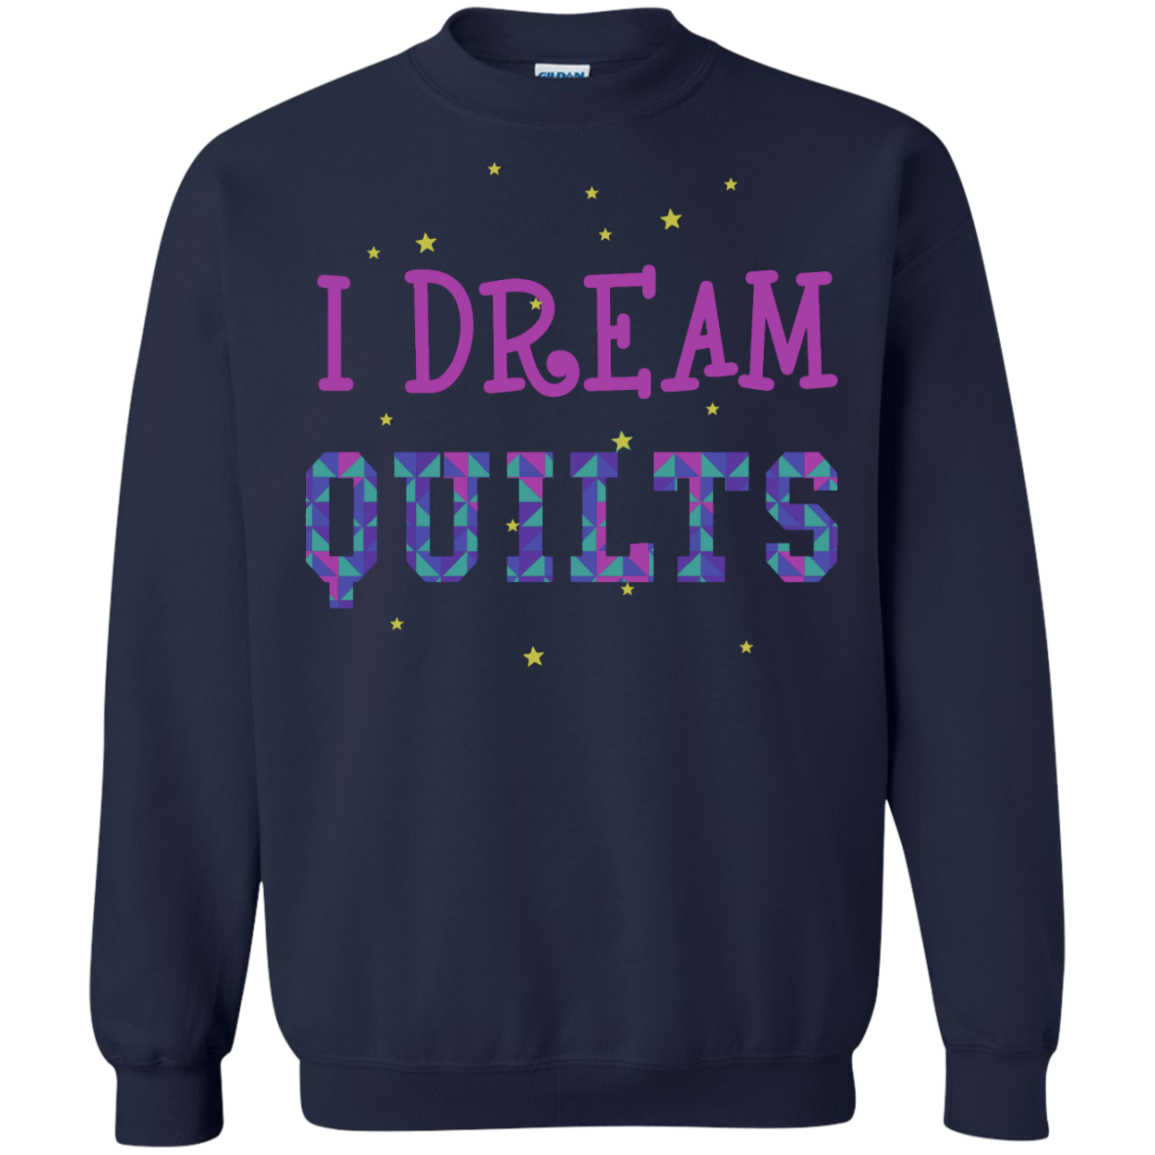 I Dream Quilts Crewneck Sweatshirt - Crafter4Life - 7